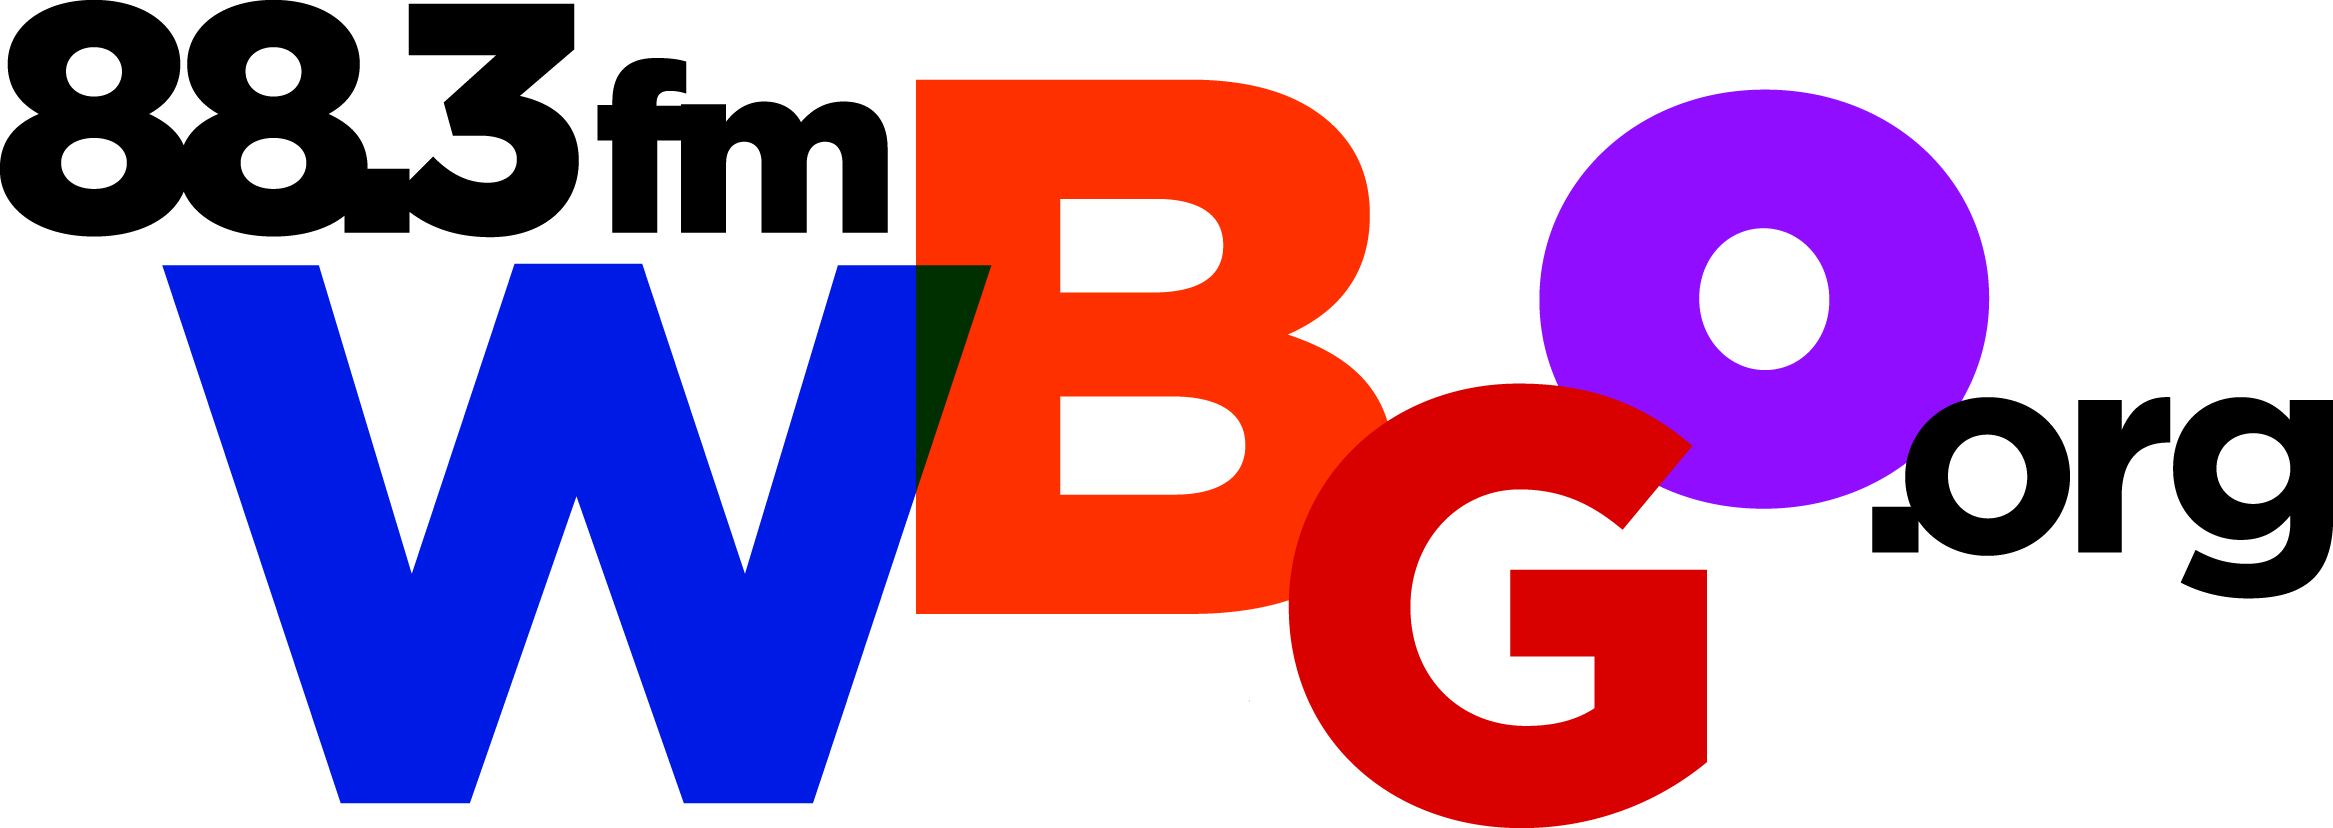 WBGO_primary_logo.jpg